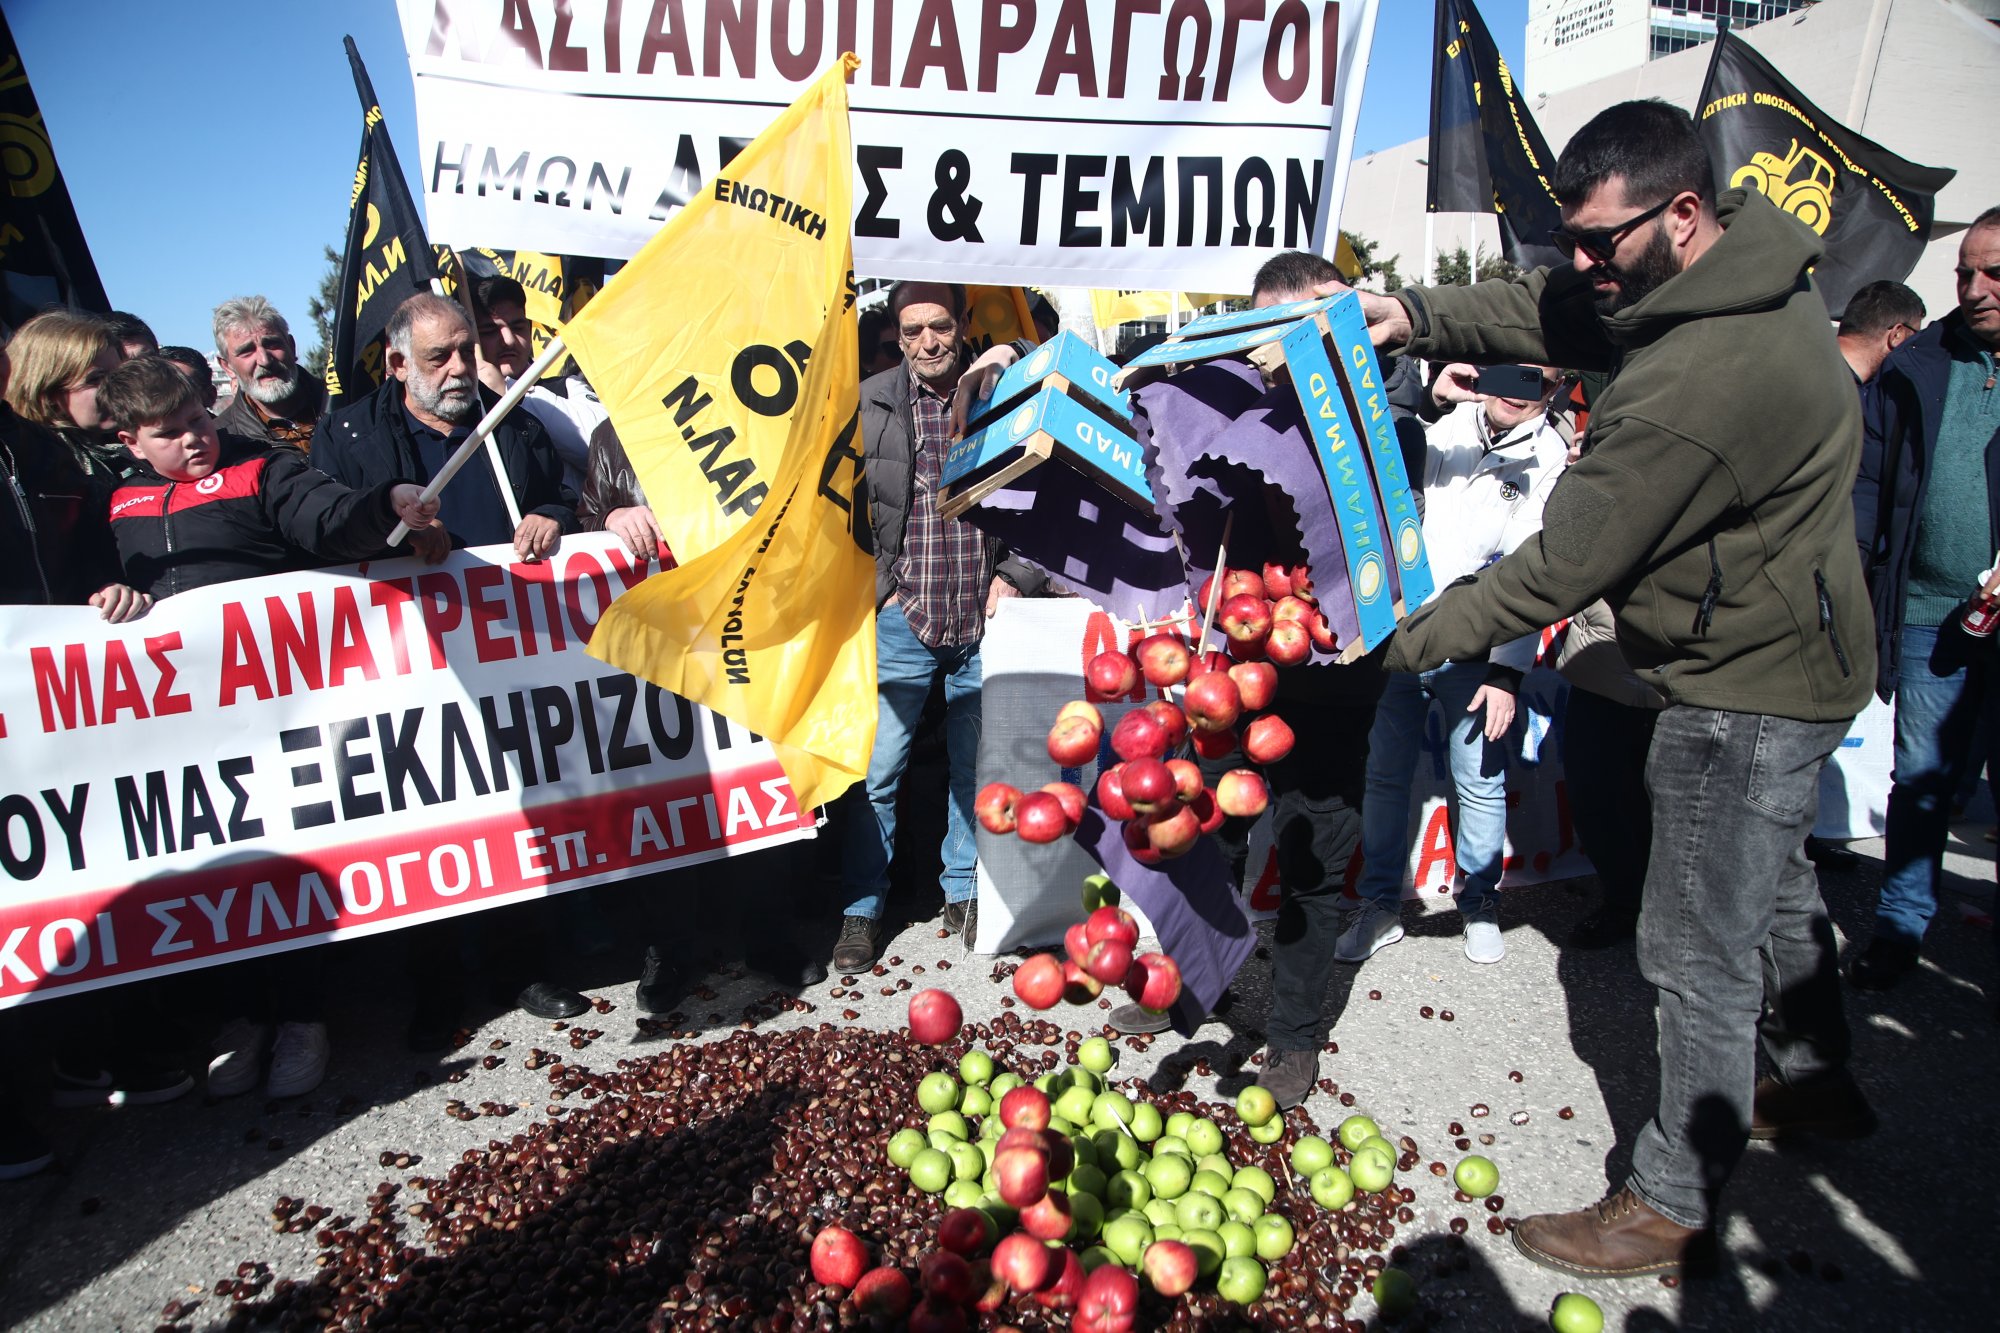 Μαστίγιο και καρότο στους αγρότες από την κυβέρνηση - Στη Λάρισα μεταφέρεται το κέντρο αγώνα